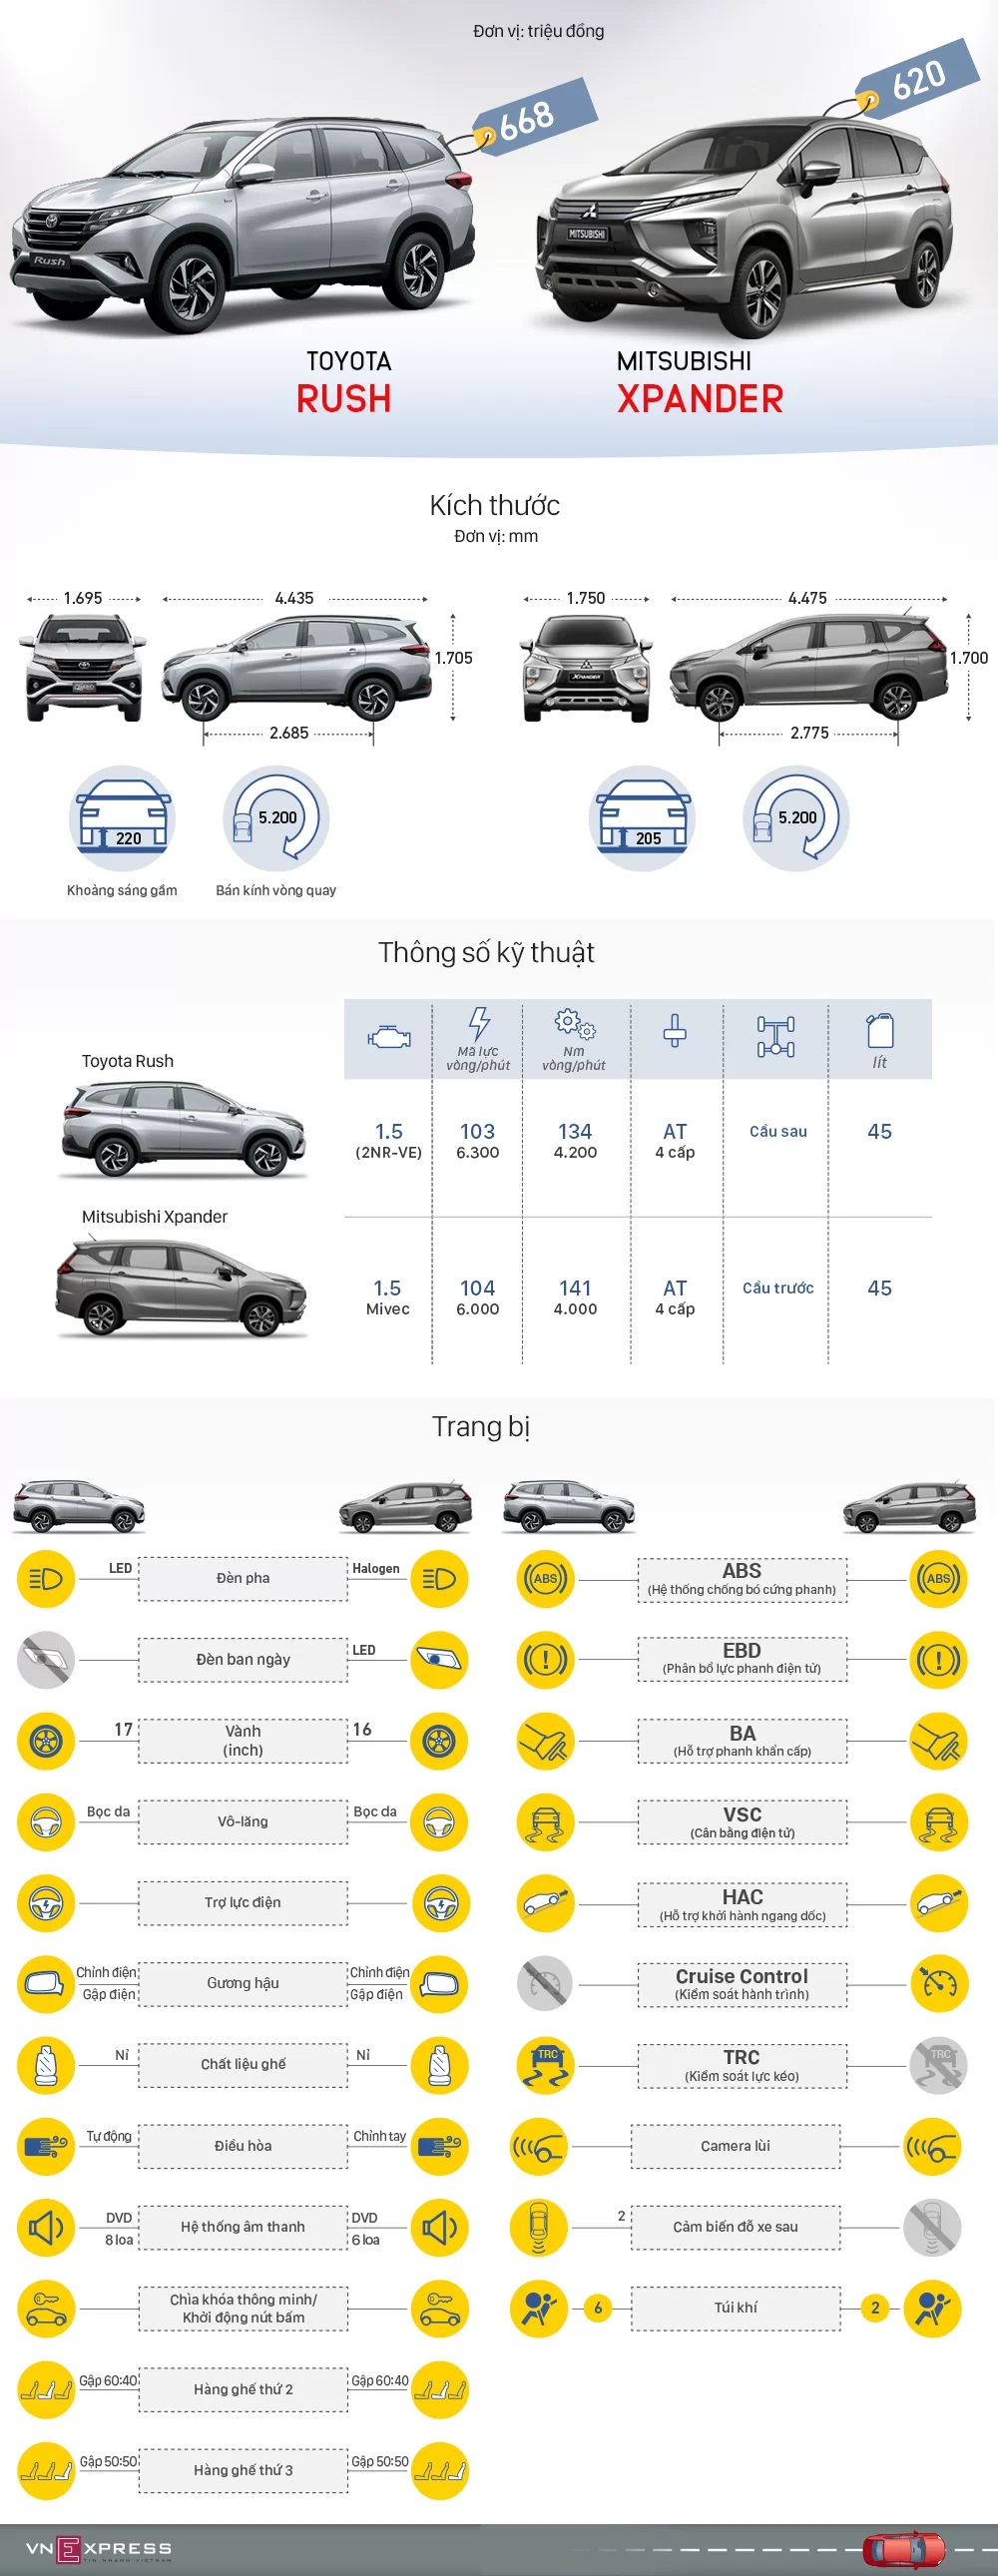 So sánh thông số xe Mitsubishi Xpander và Toyota Rush